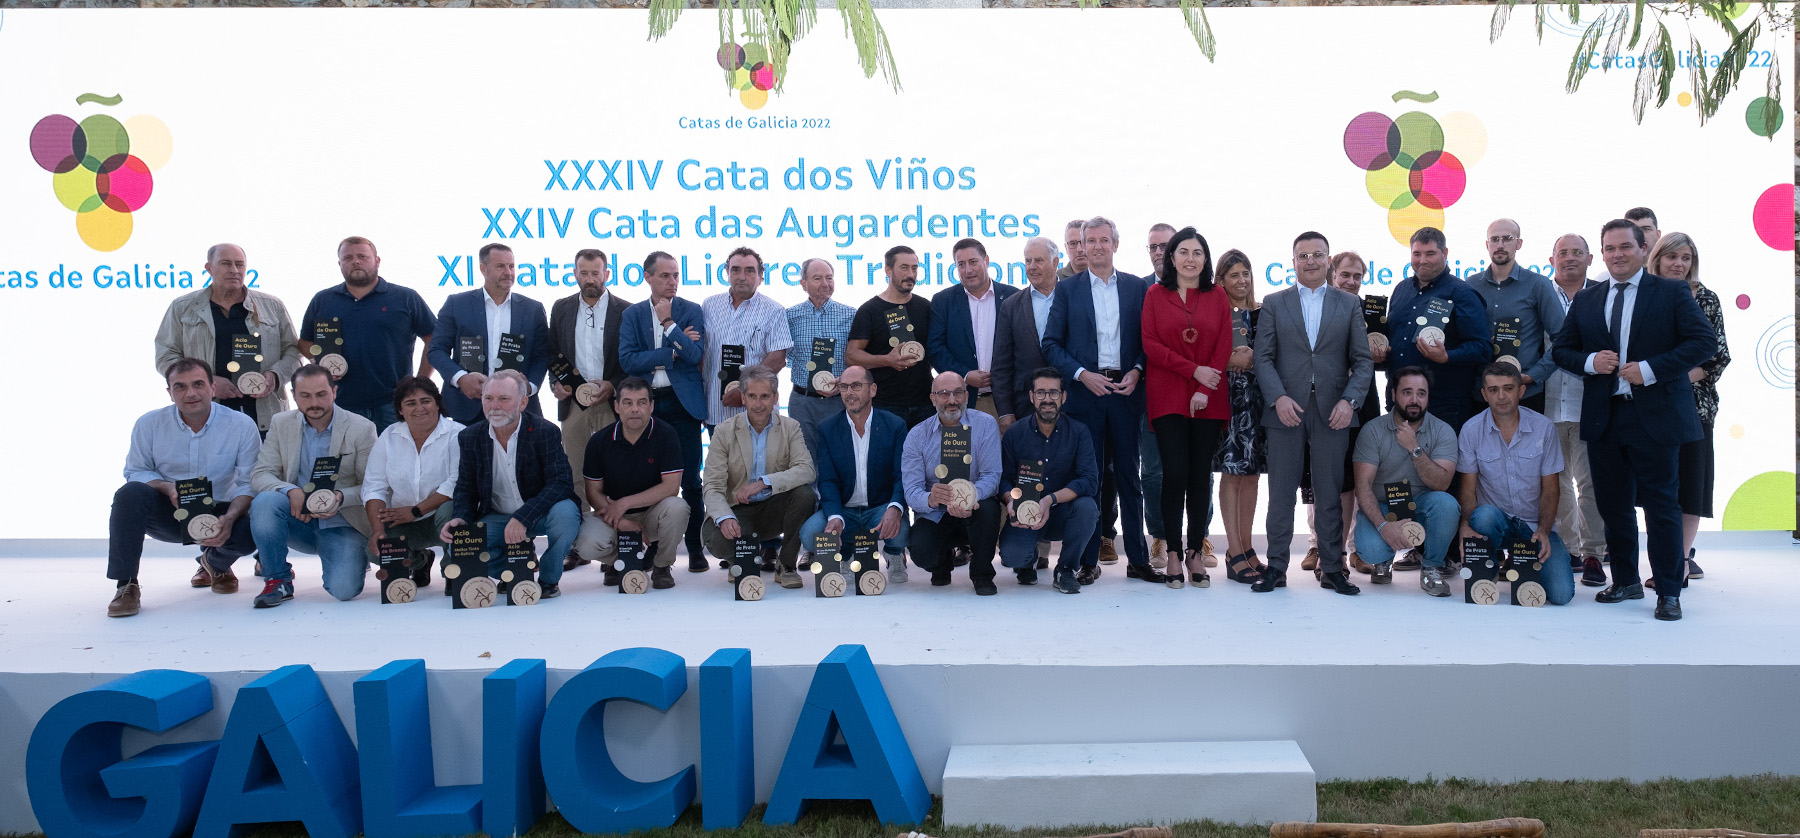 Estos son los vinos y aguardientes premiados en las Catas de Galicia 2022